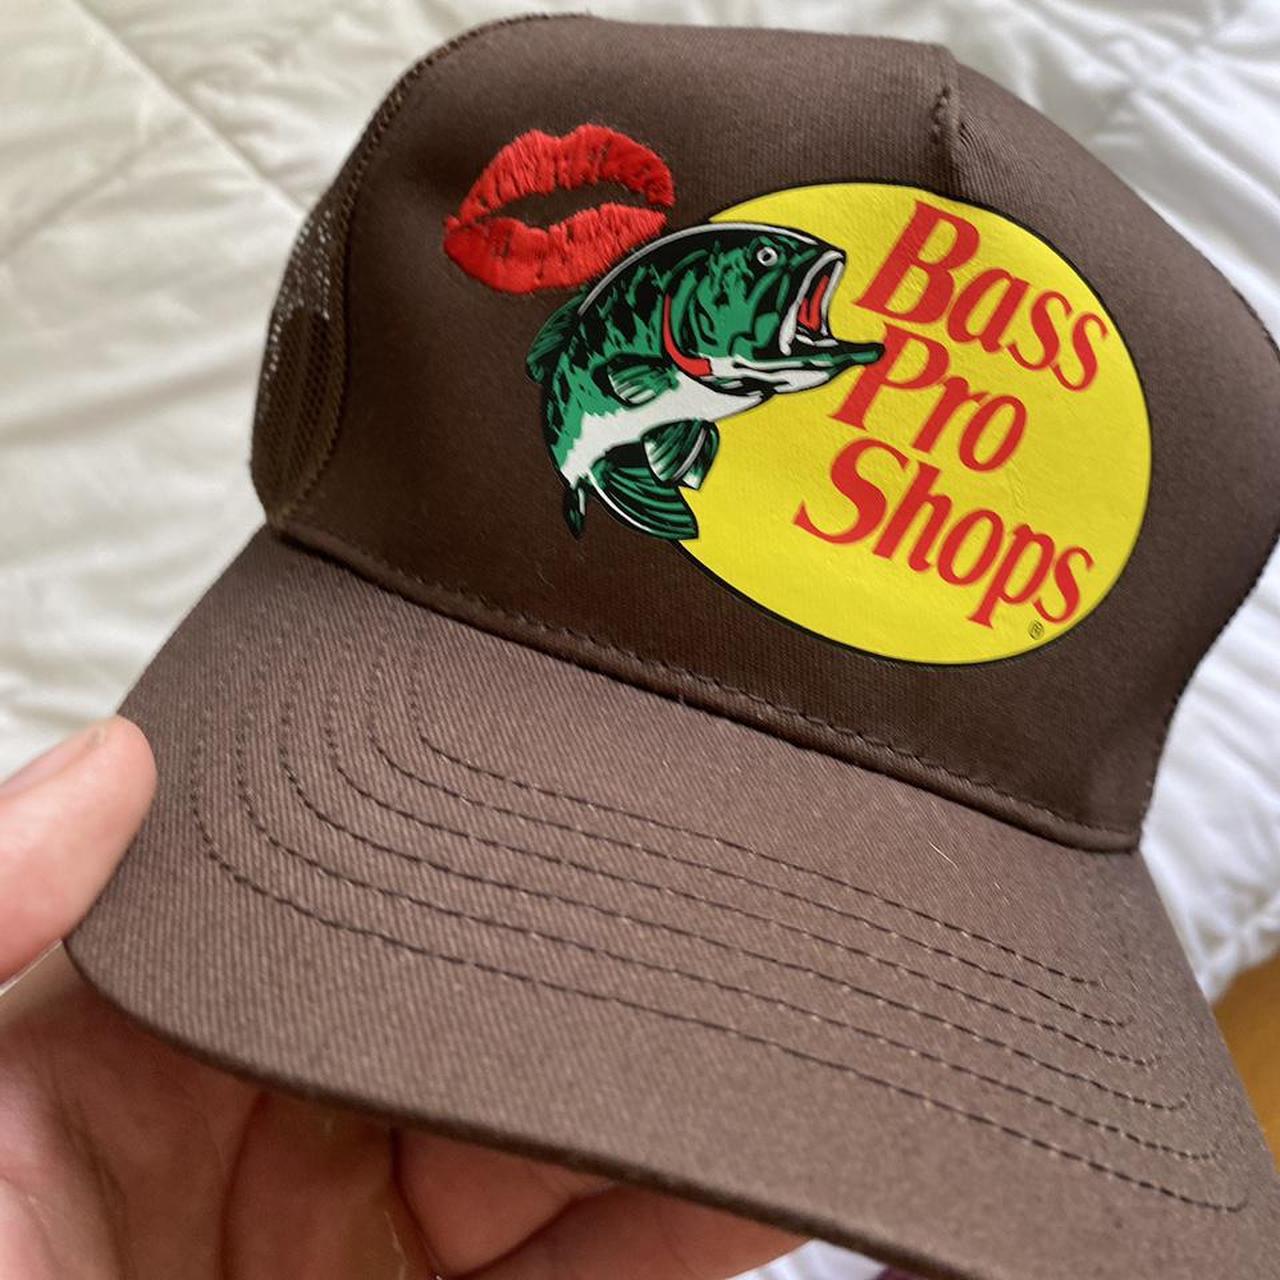 Bass pro shop kiss trucker hat custom 1/1, New. Fits